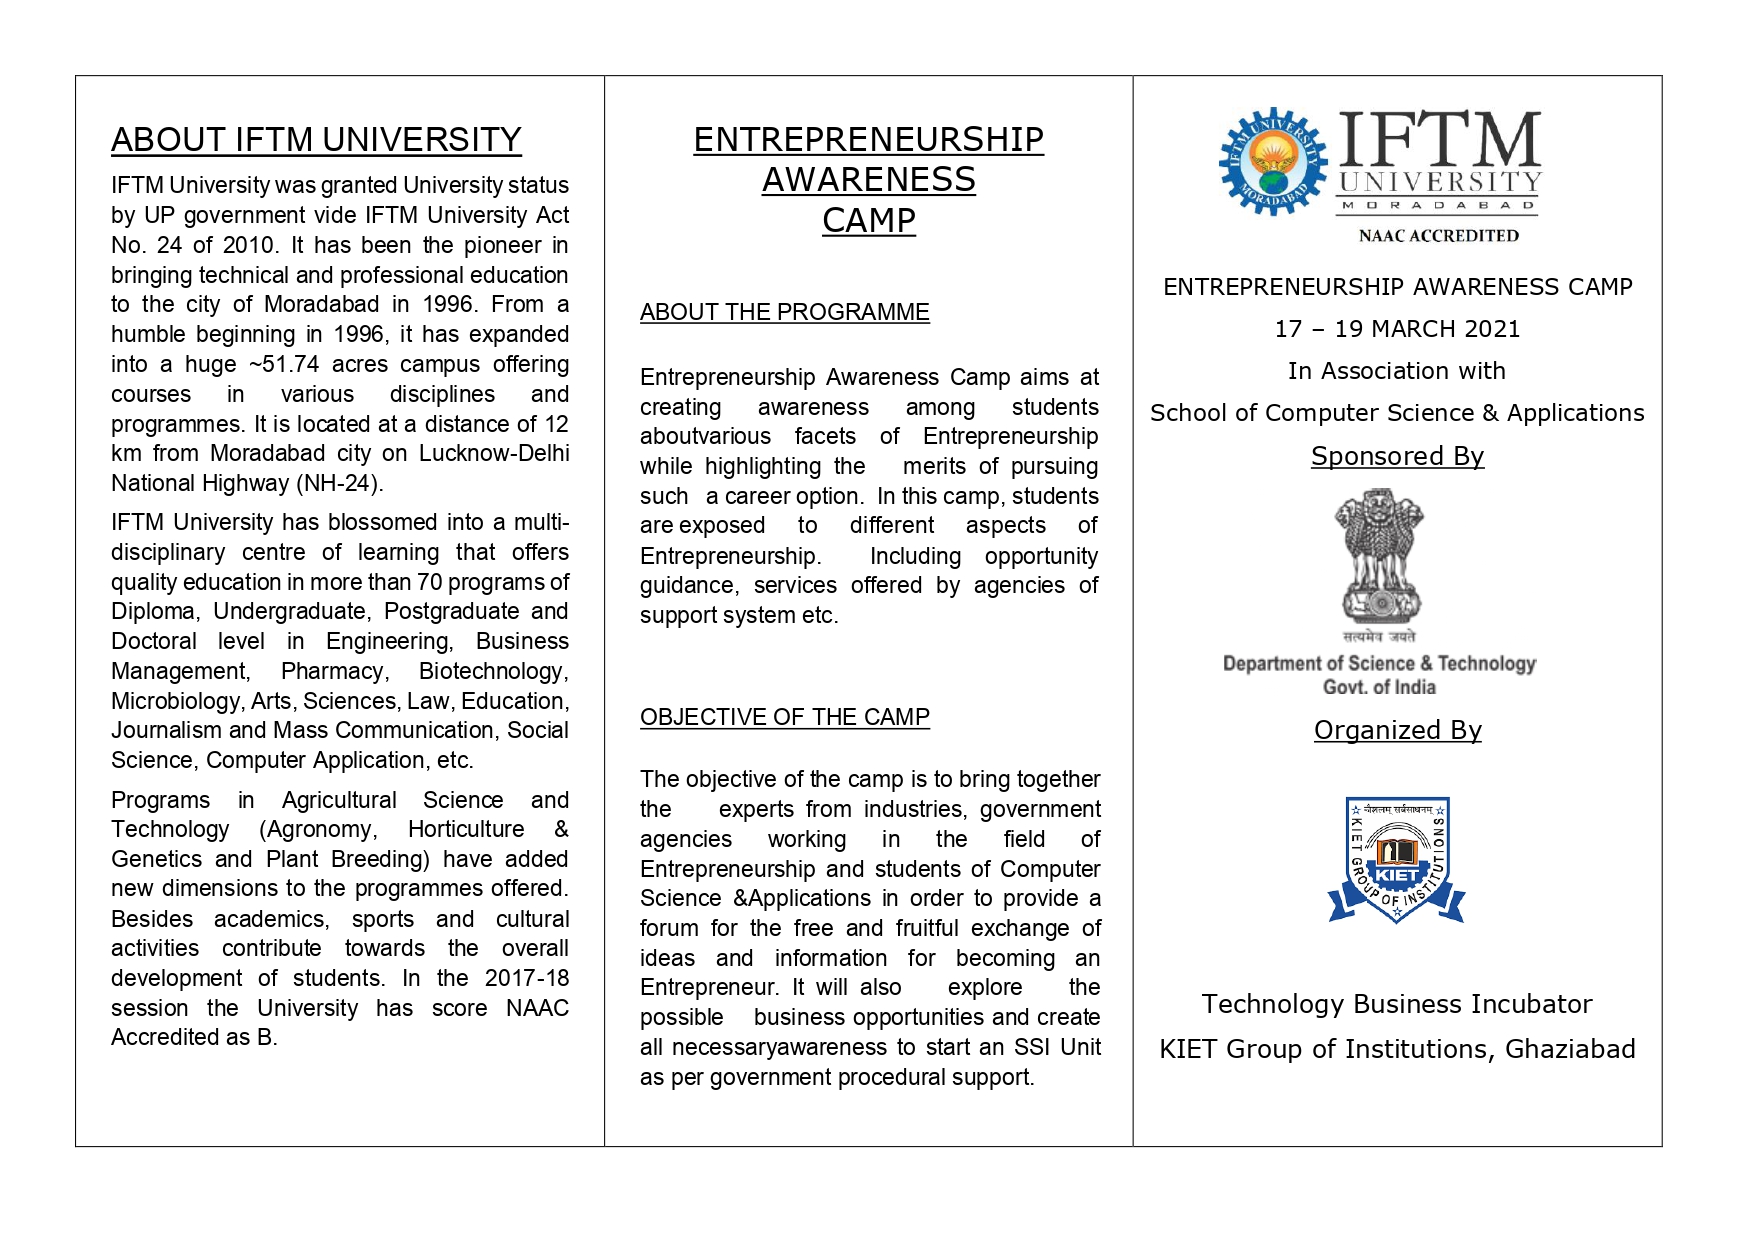 Entrepreneurship Awareness Camp between 17-19, 2021 at IFTM UNIVERSITY